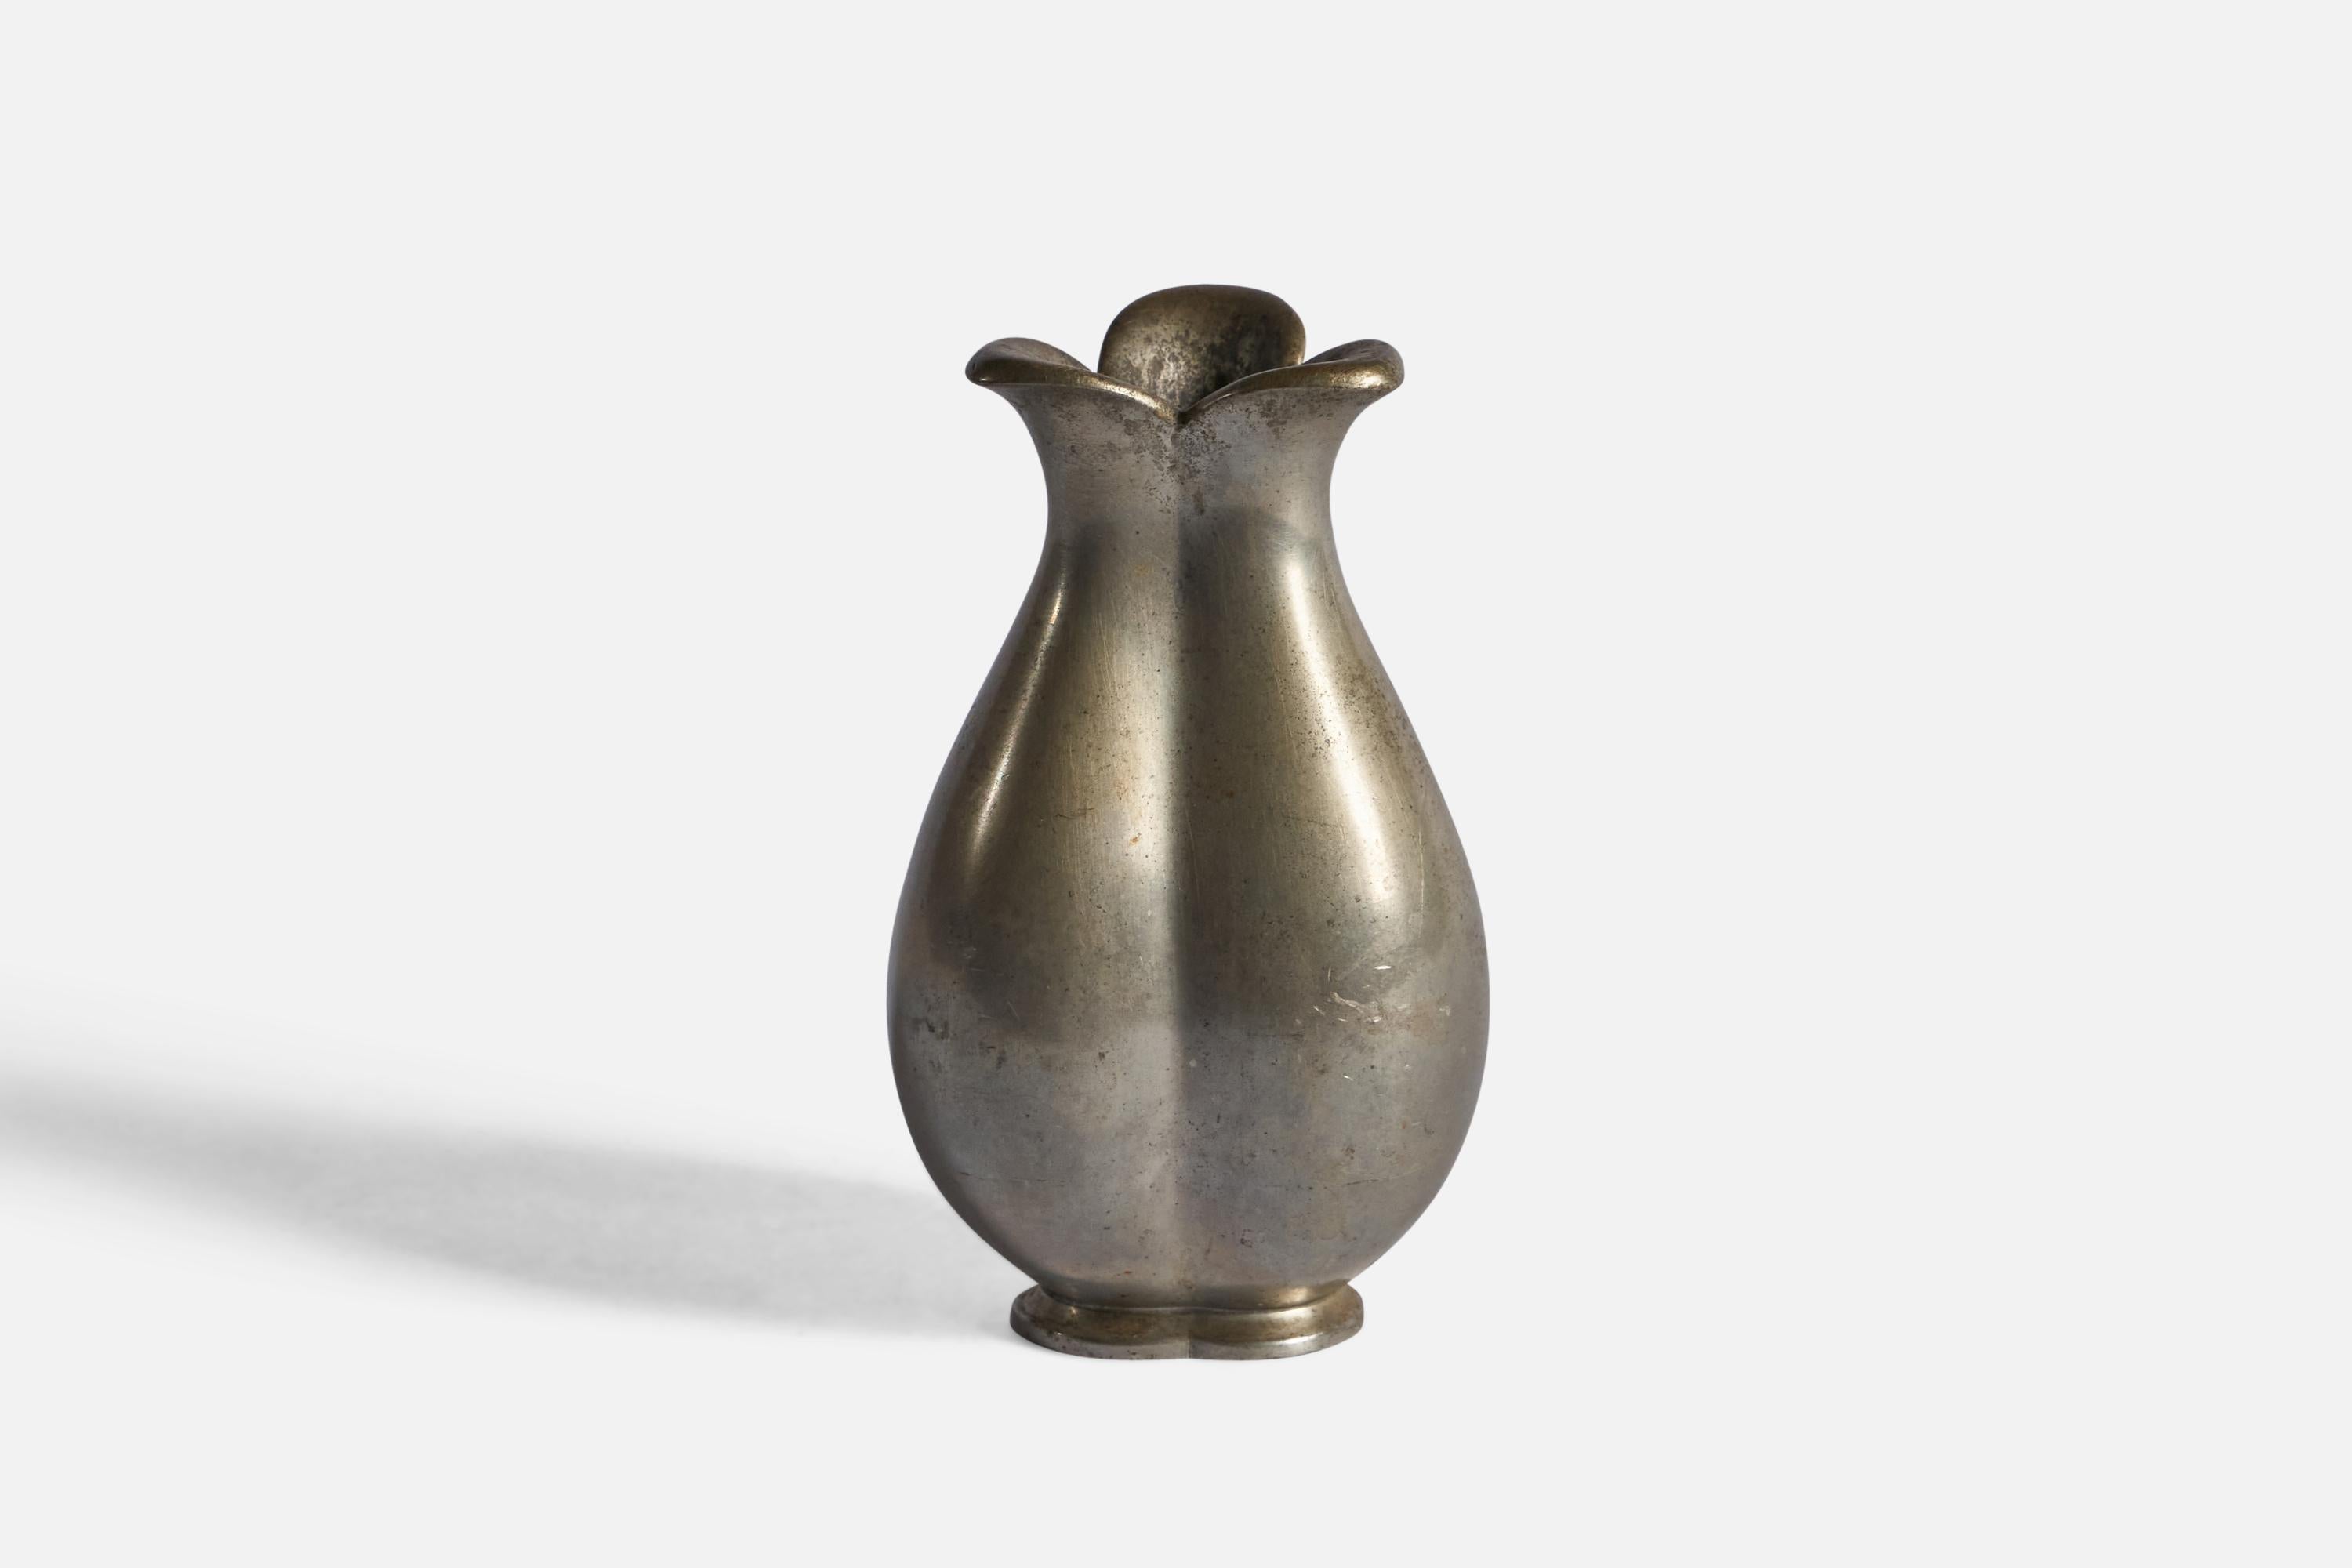 Vase aus Zinn, entworfen und hergestellt von Just Andersen, Dänemark, um 1930.